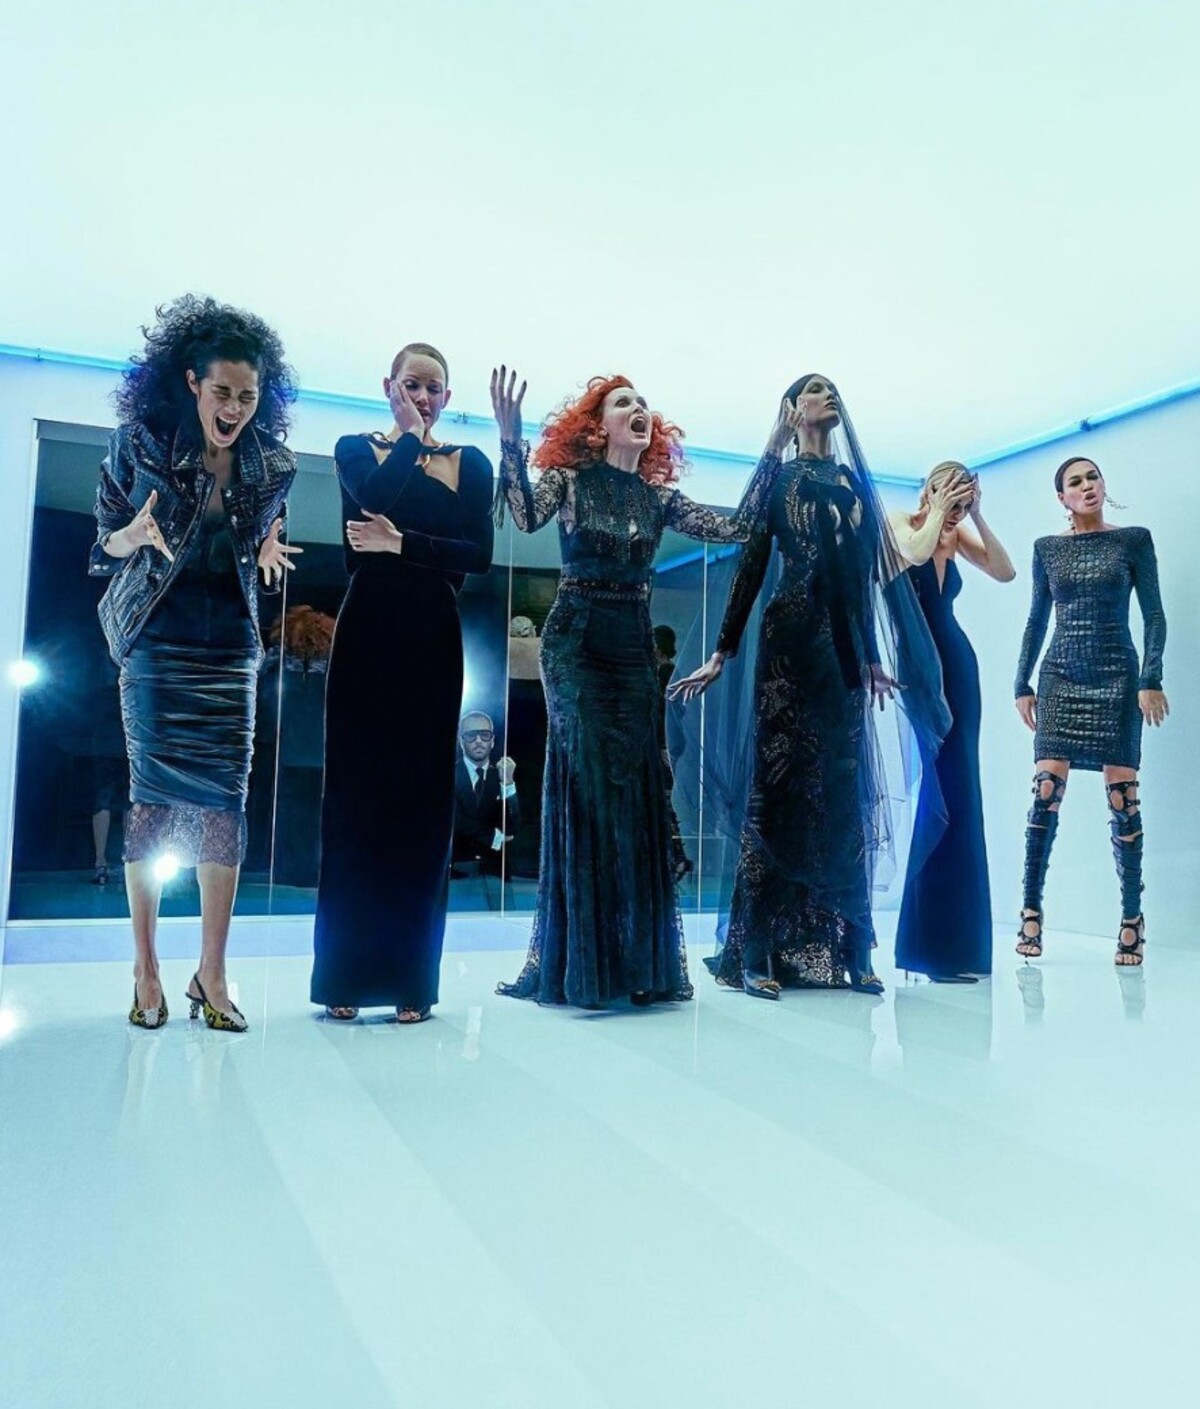 Tom Ford sa lúči so svojím módnym domom. Dizajnér predstavuje svoju poslednú dámsku kolekciu, v ktorej prevetral Zendayin virálny top, šaty Beyoncé aj róbu Gwyneth Paltrow.